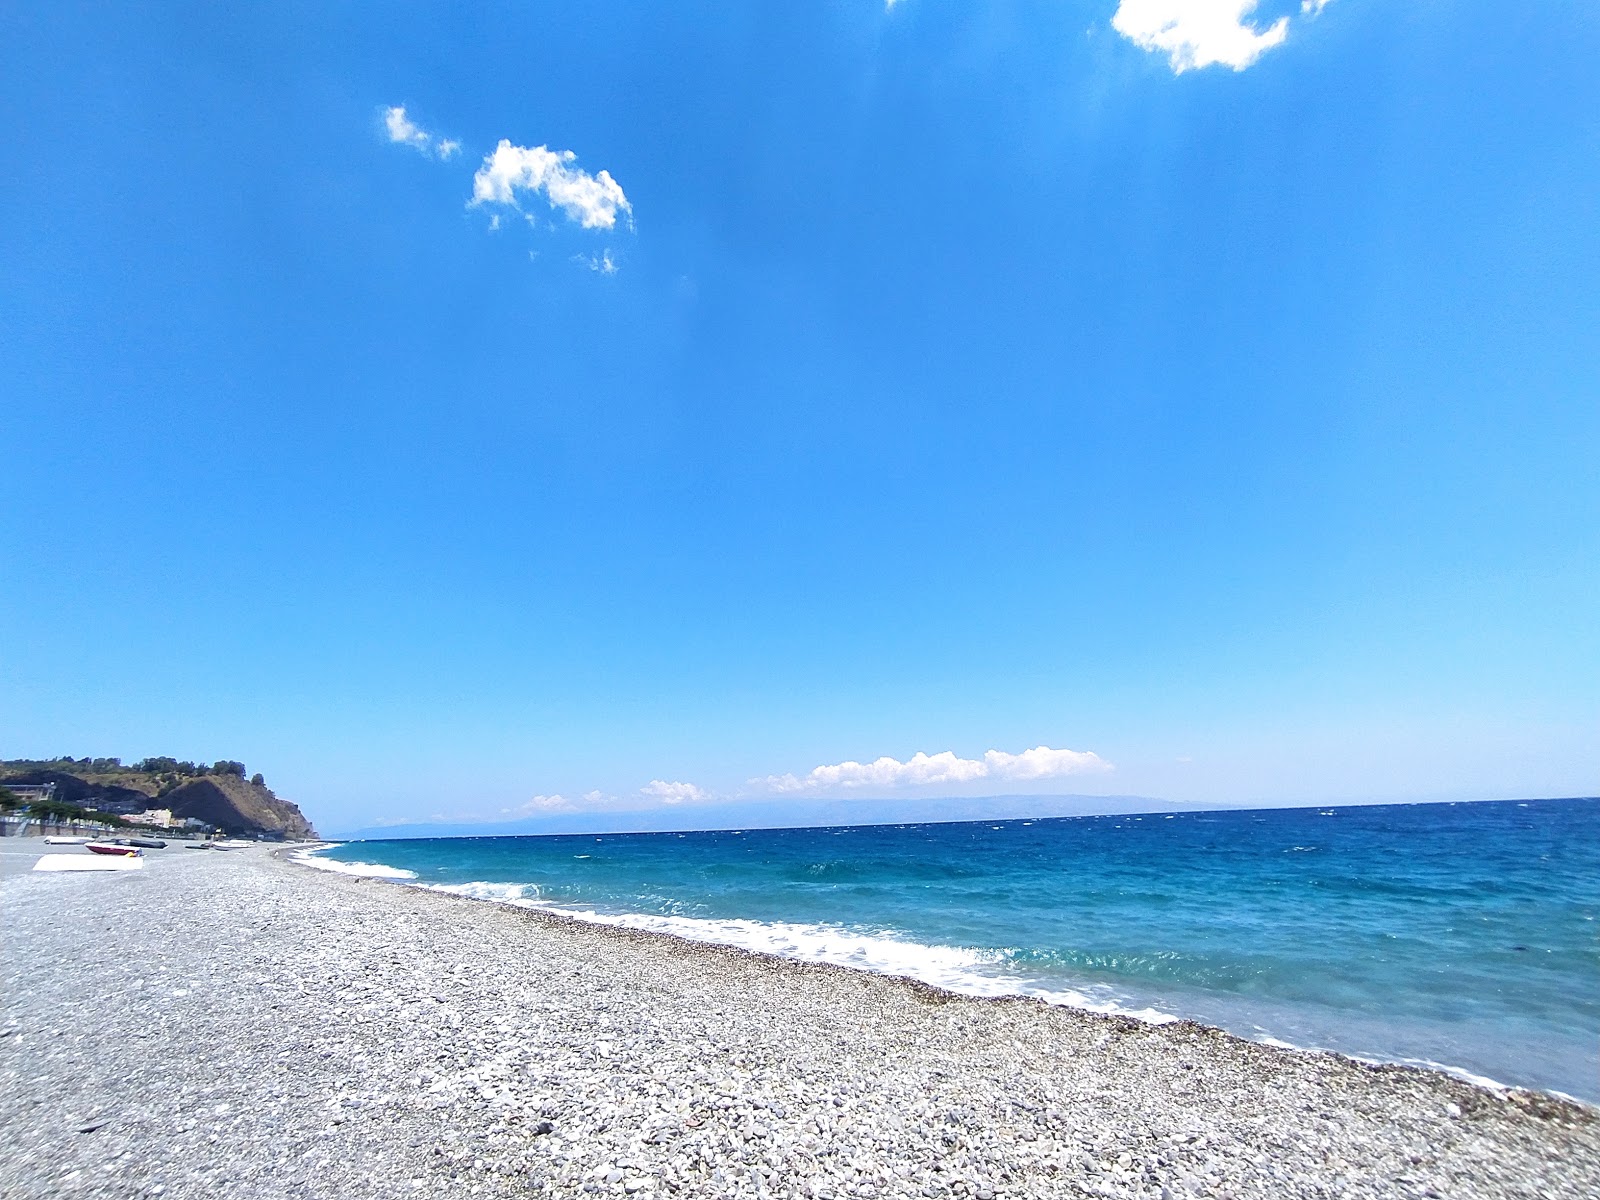 Ali Terme beach'in fotoğrafı imkanlar alanı